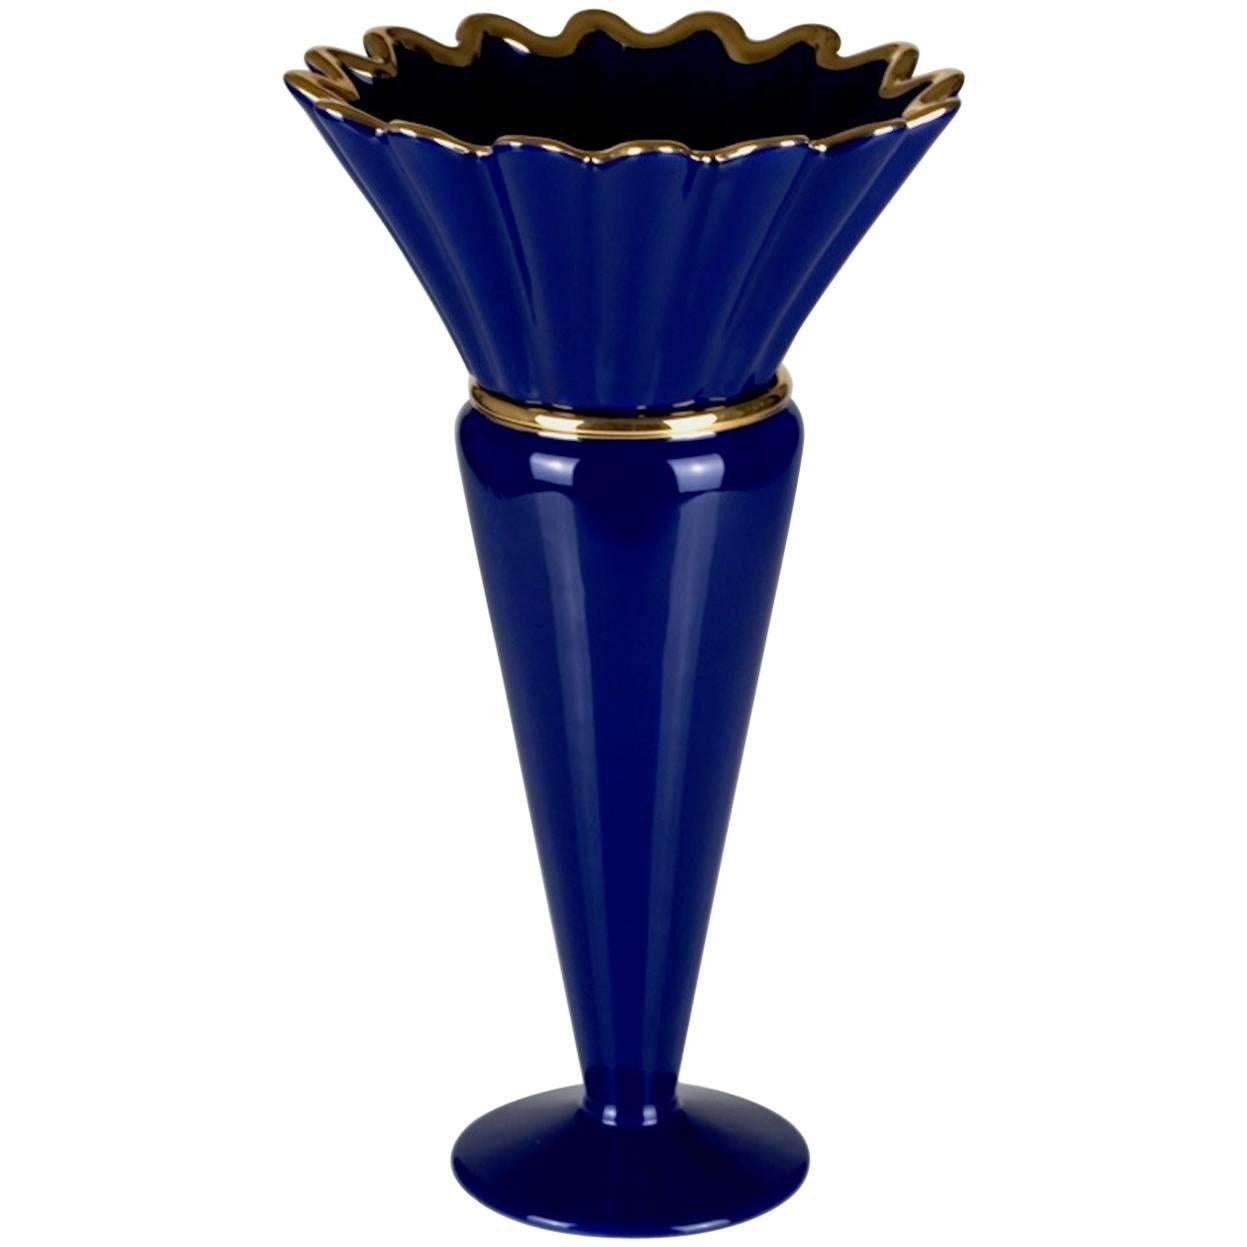 Vase en céramique 04 Modèle 900 de la collection Ugo La Pietra pour Superego Editions.